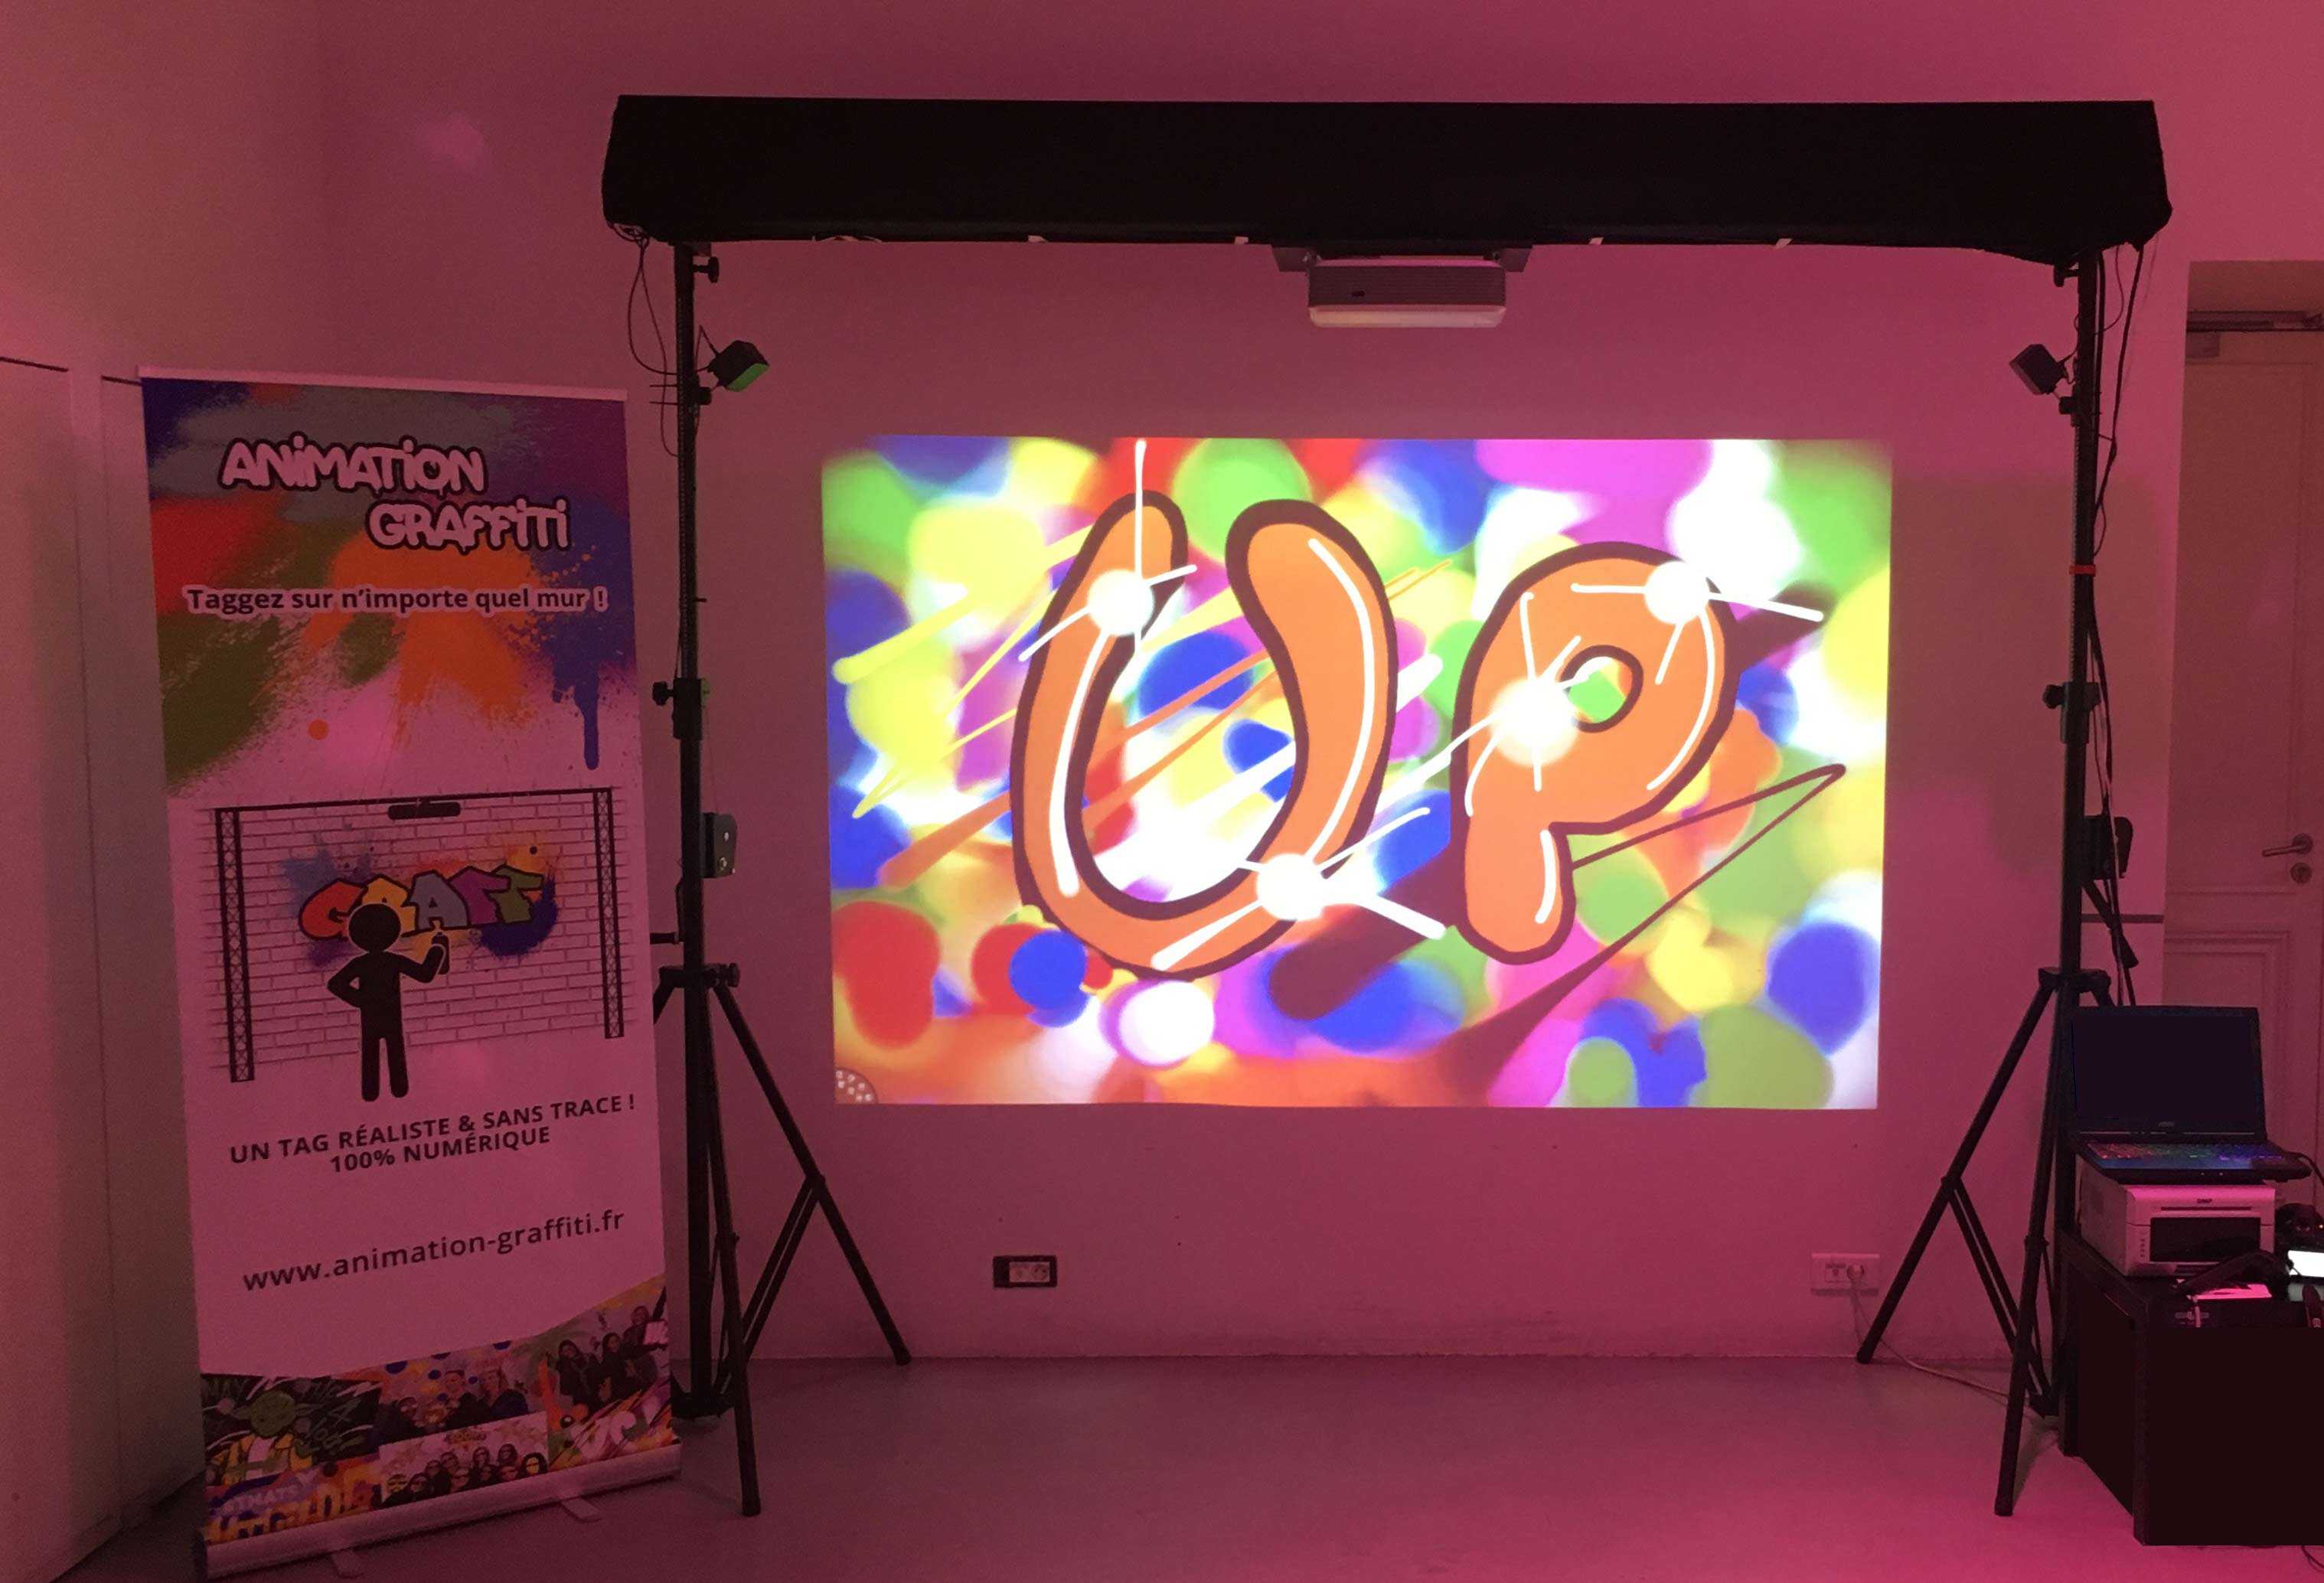 Animation soirée entreprises - Réalité virtuelle animation événementiel graffiti virtuel